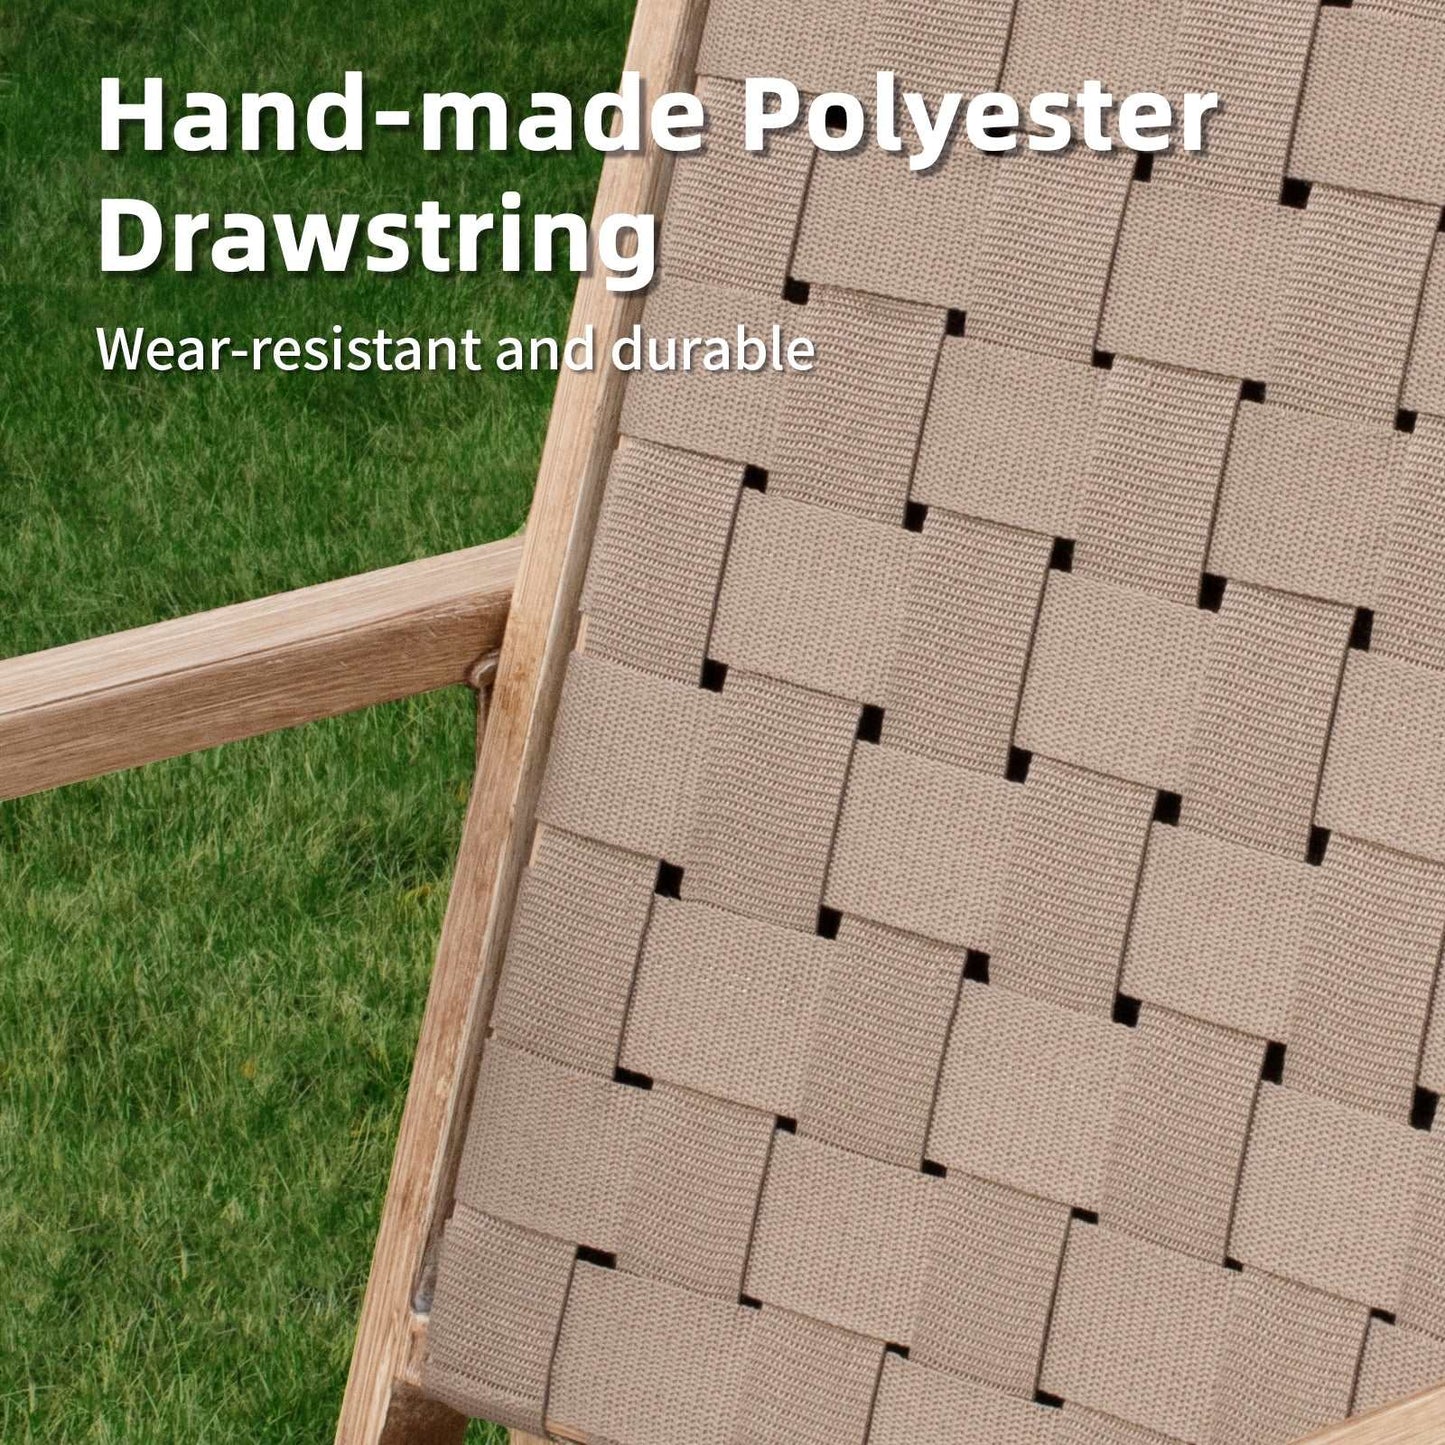 NADADI-Drawstring-Patio-Chairs-2A-hand-made-polyester-drawstring